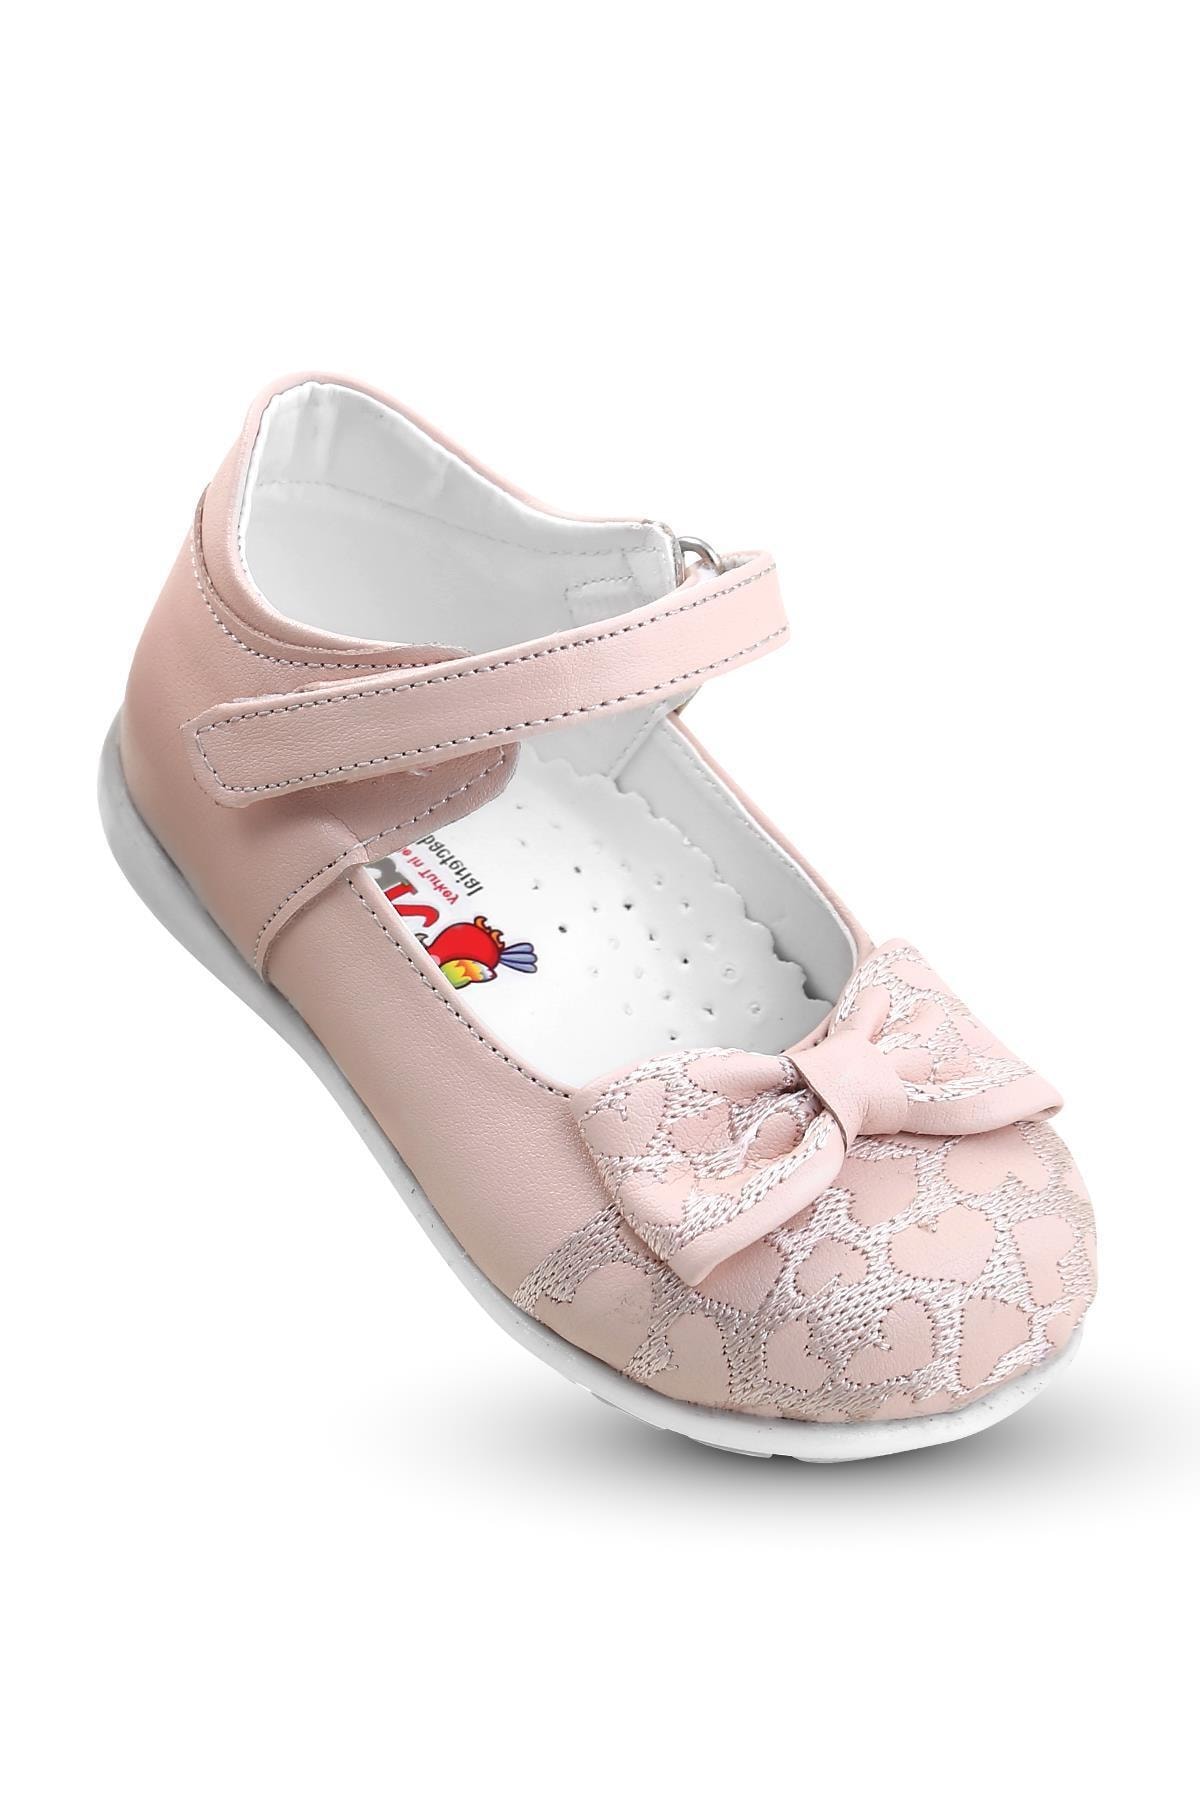 KAPTAN JUNIOR Kız Bebek Ortopedik Ayakkabı Spor Babet Bssk 200 Pudra